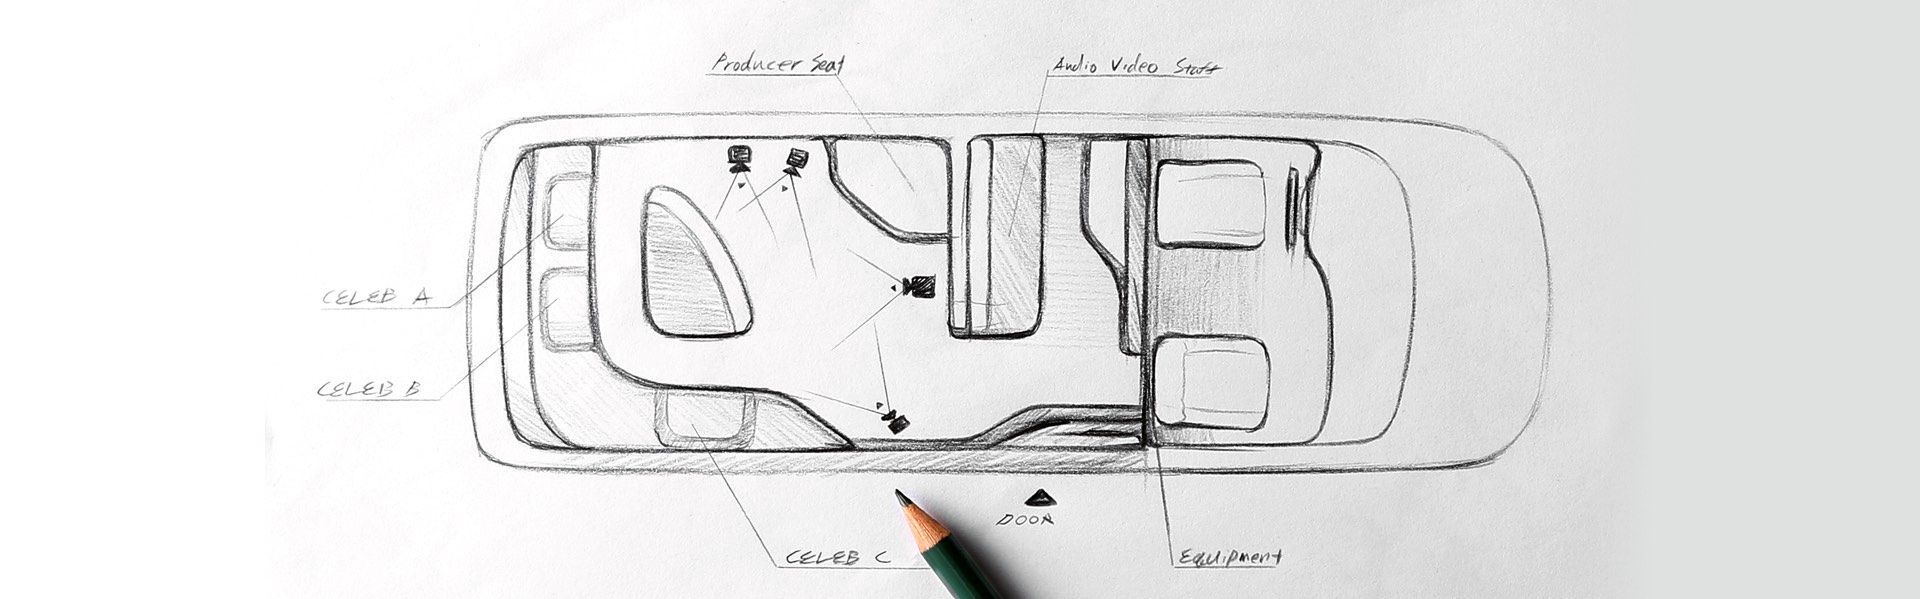 Proceso de diseño manual - Hyundai Camiones y buses Ecuador